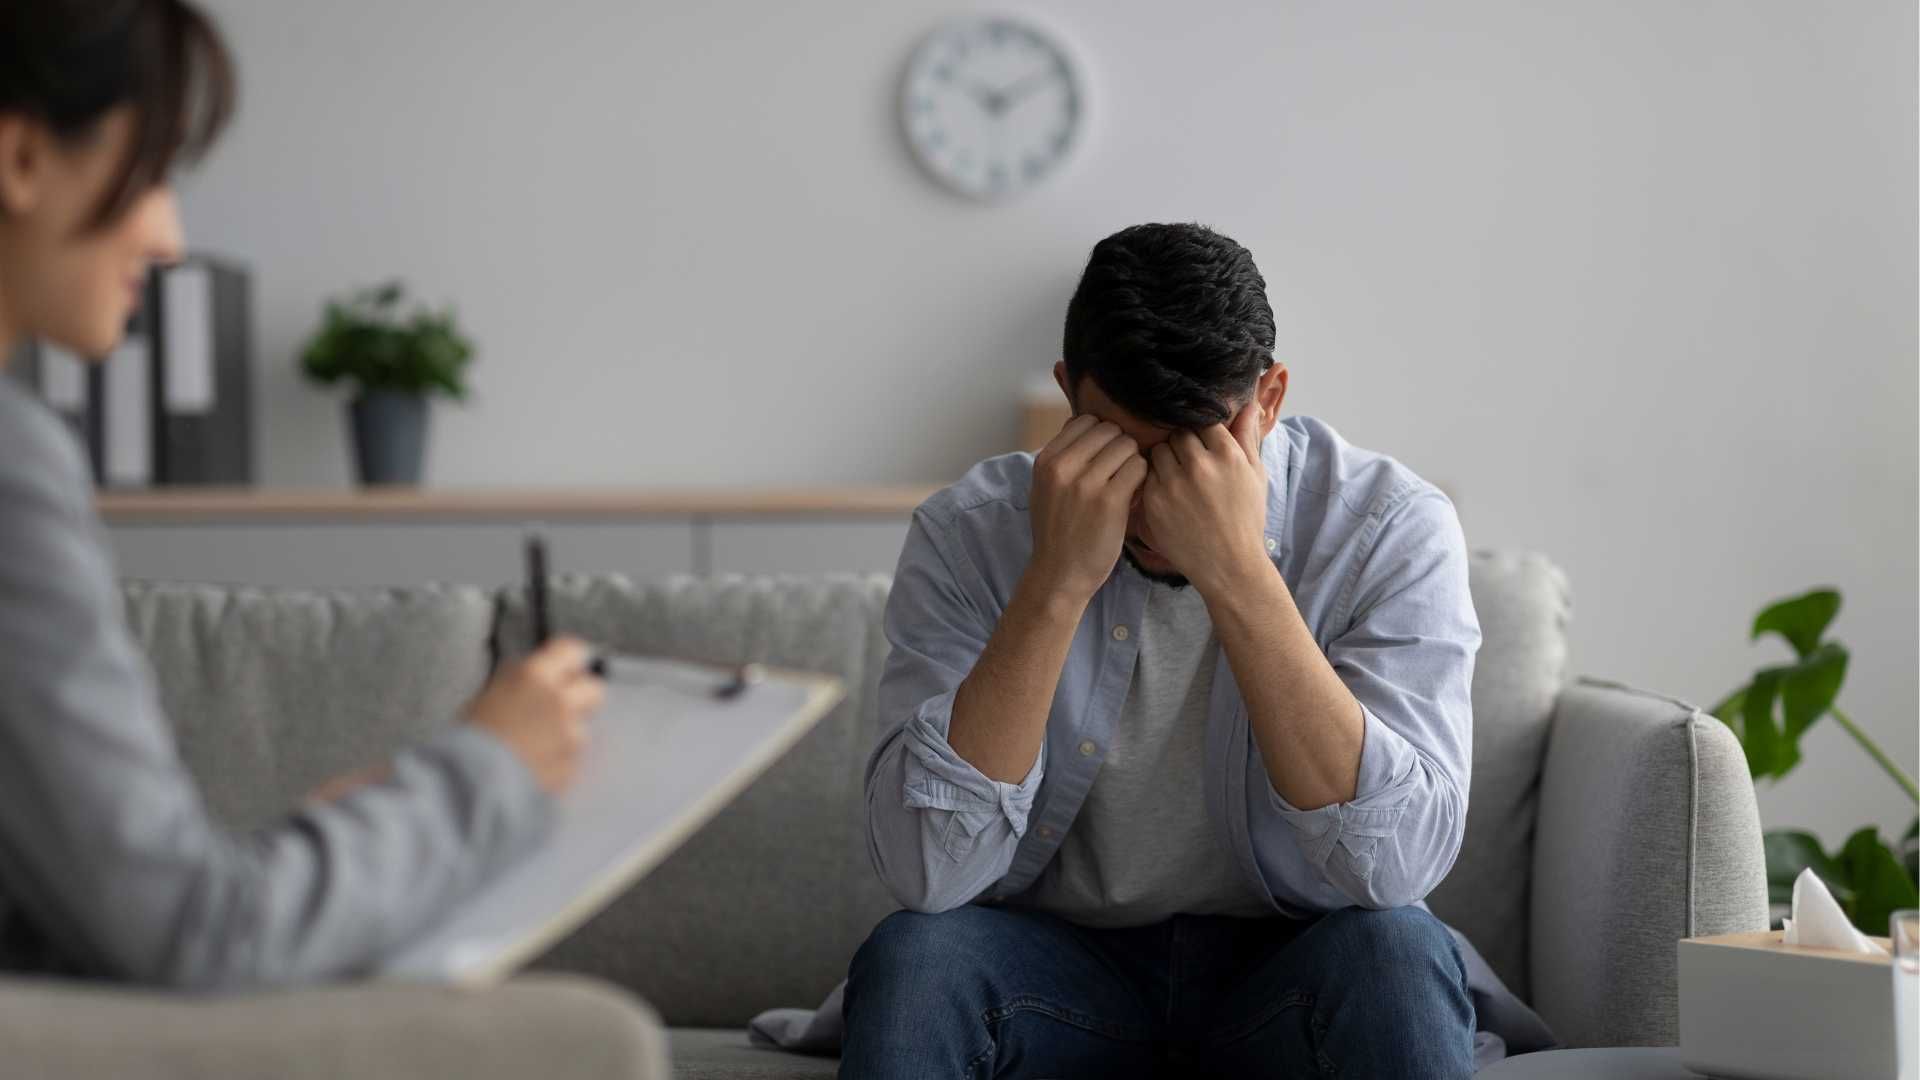 مشاوره روانشناسی سازگاری با ناکامی بعد از طلاق و شکست عاطفی (10 جلسه تلفنی ، هر جلسه 45 دقیقه) دکتر مسعود رضازاده در تبریز 1